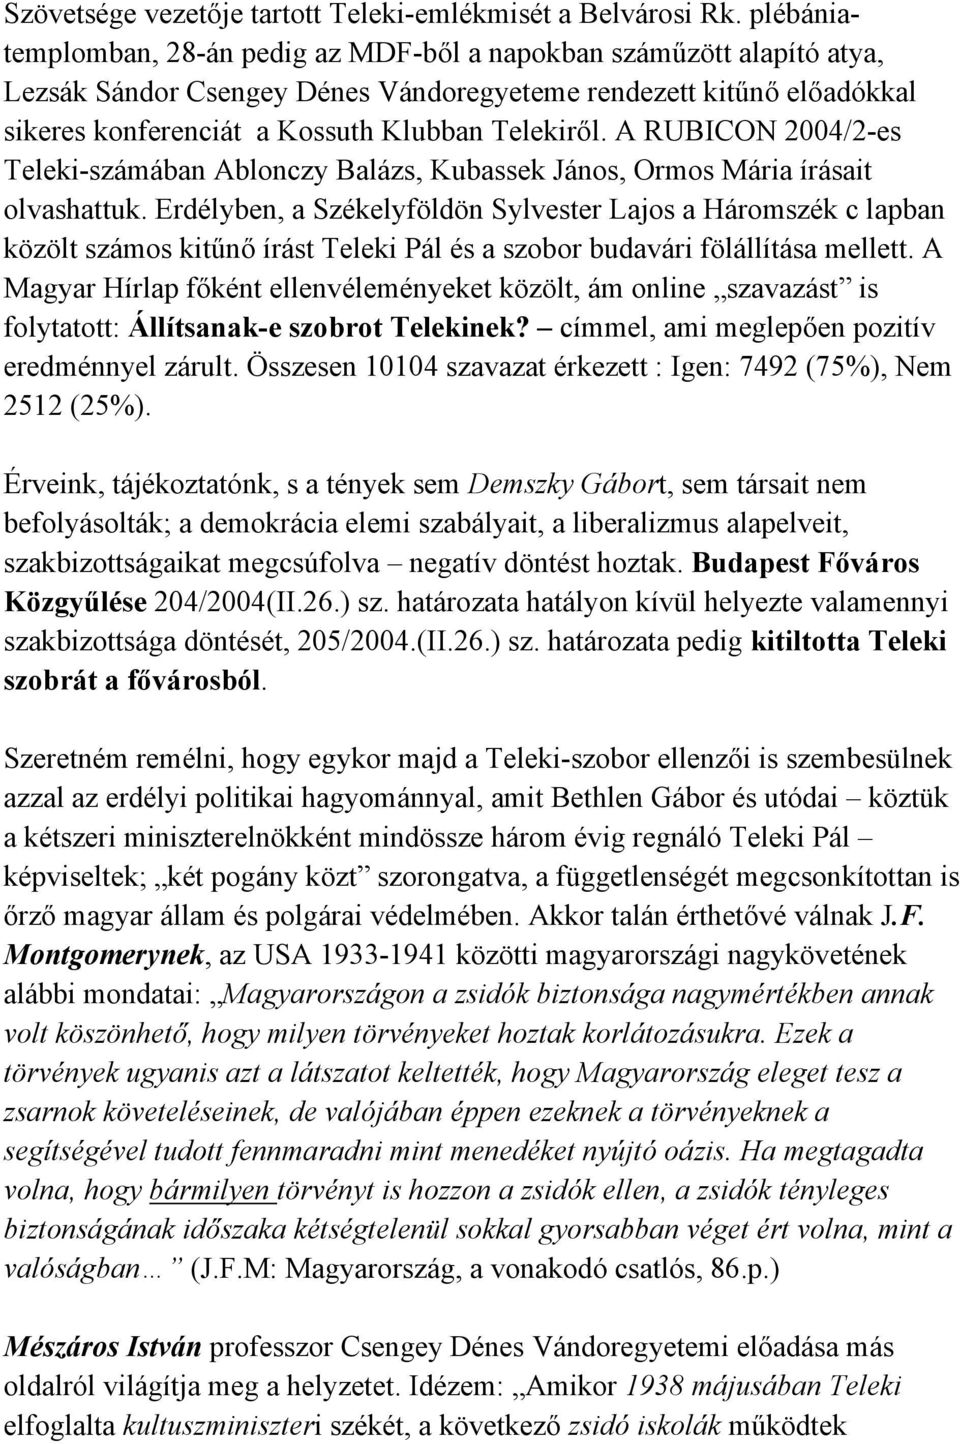 A RUBICON 2004/2-es Teleki-számában Ablonczy Balázs, Kubassek János, Ormos Mária írásait olvashattuk.